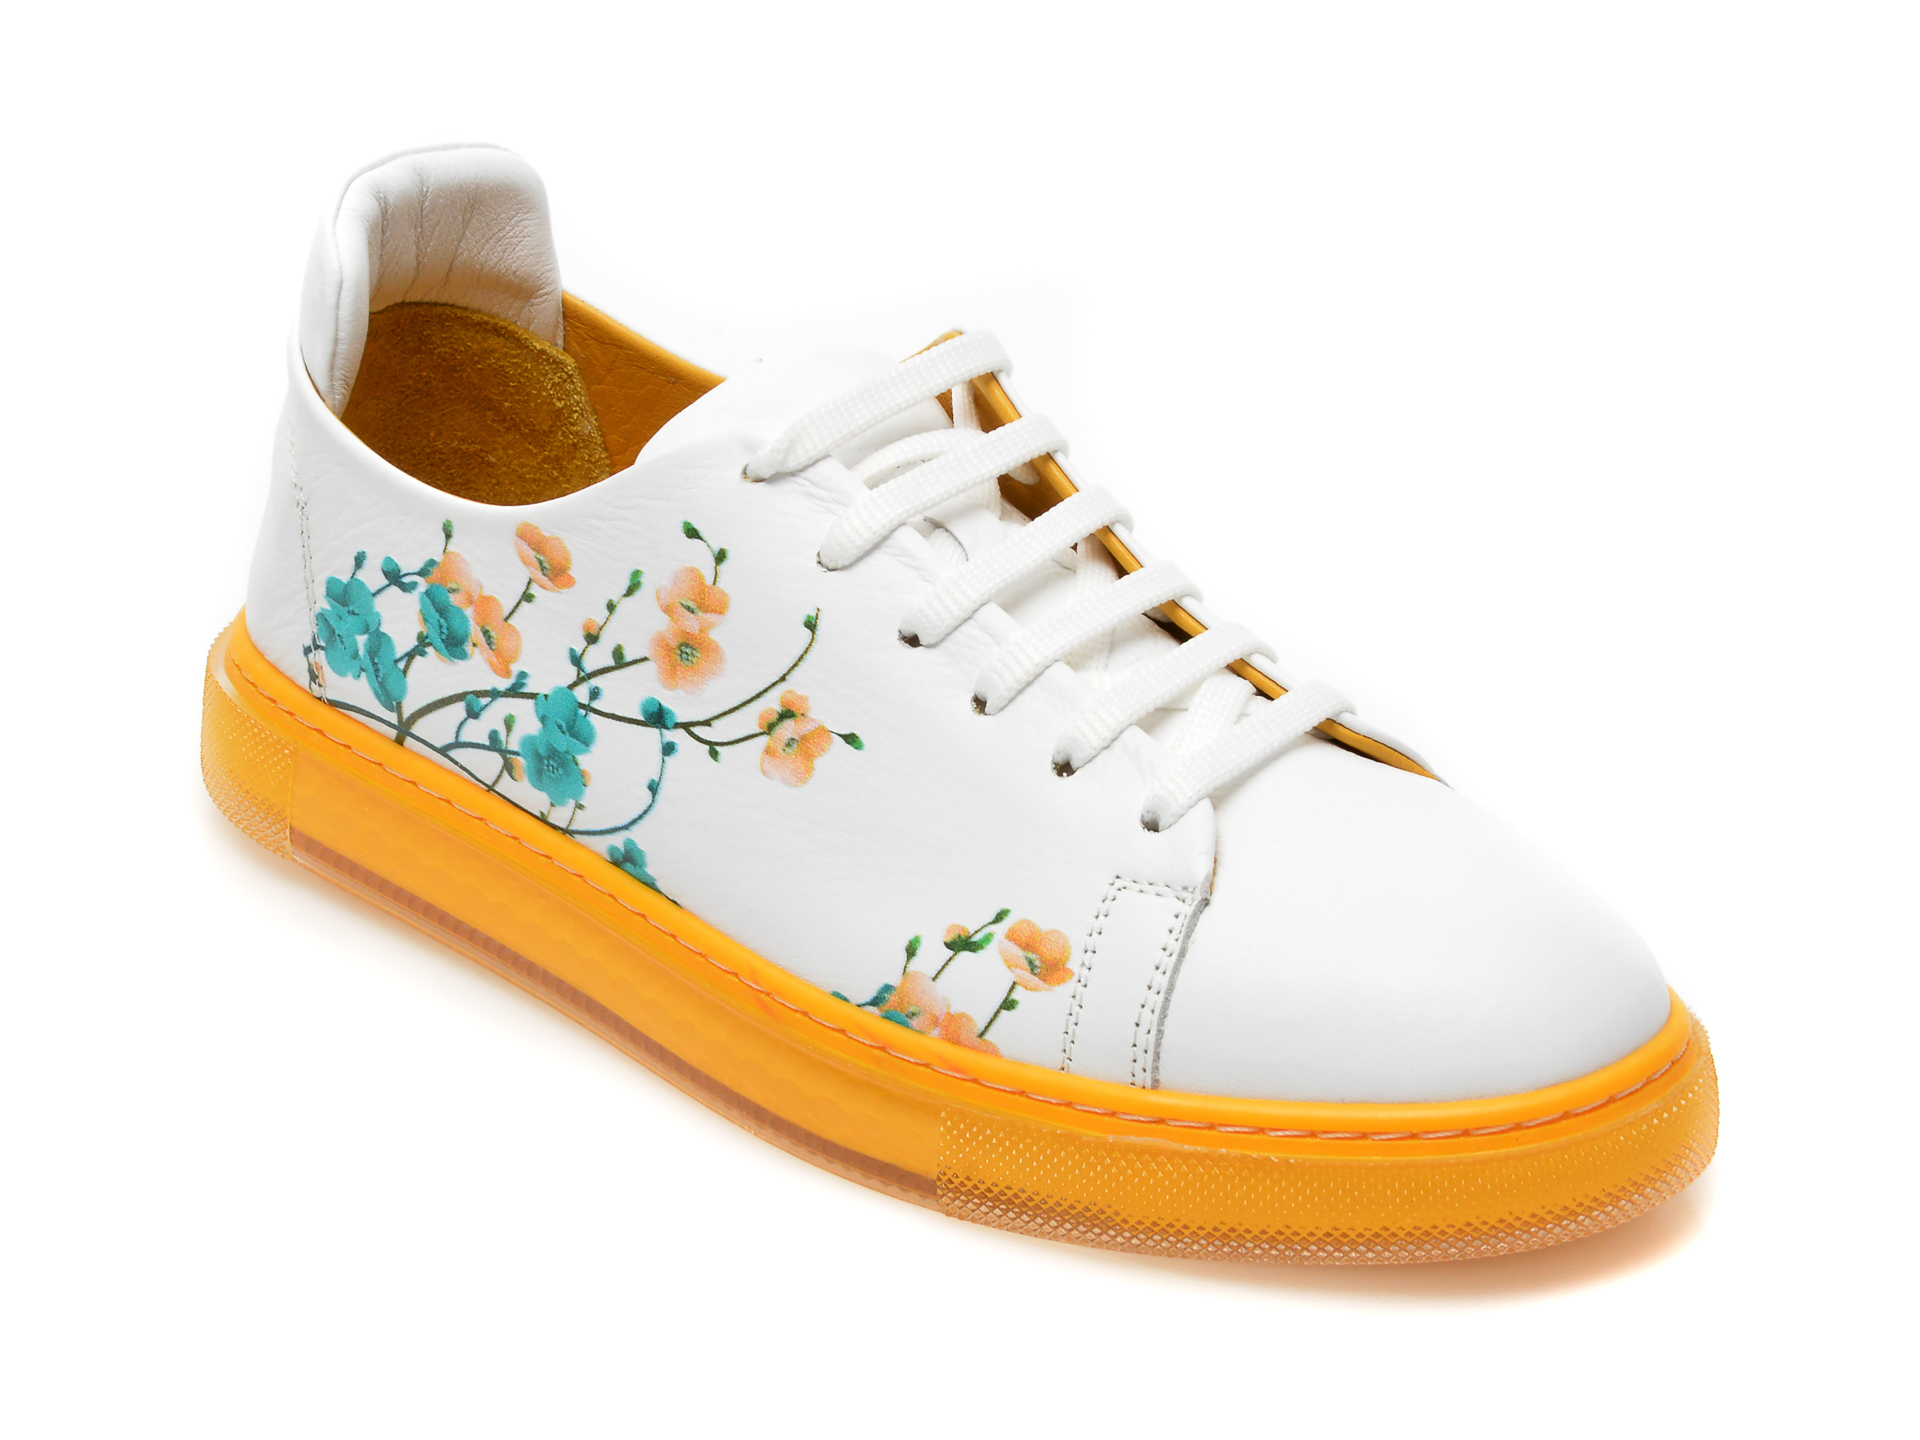 Pantofi sport FLAVIA PASSINI albi, 21T1006, din piele naturala Femei 2023-05-28